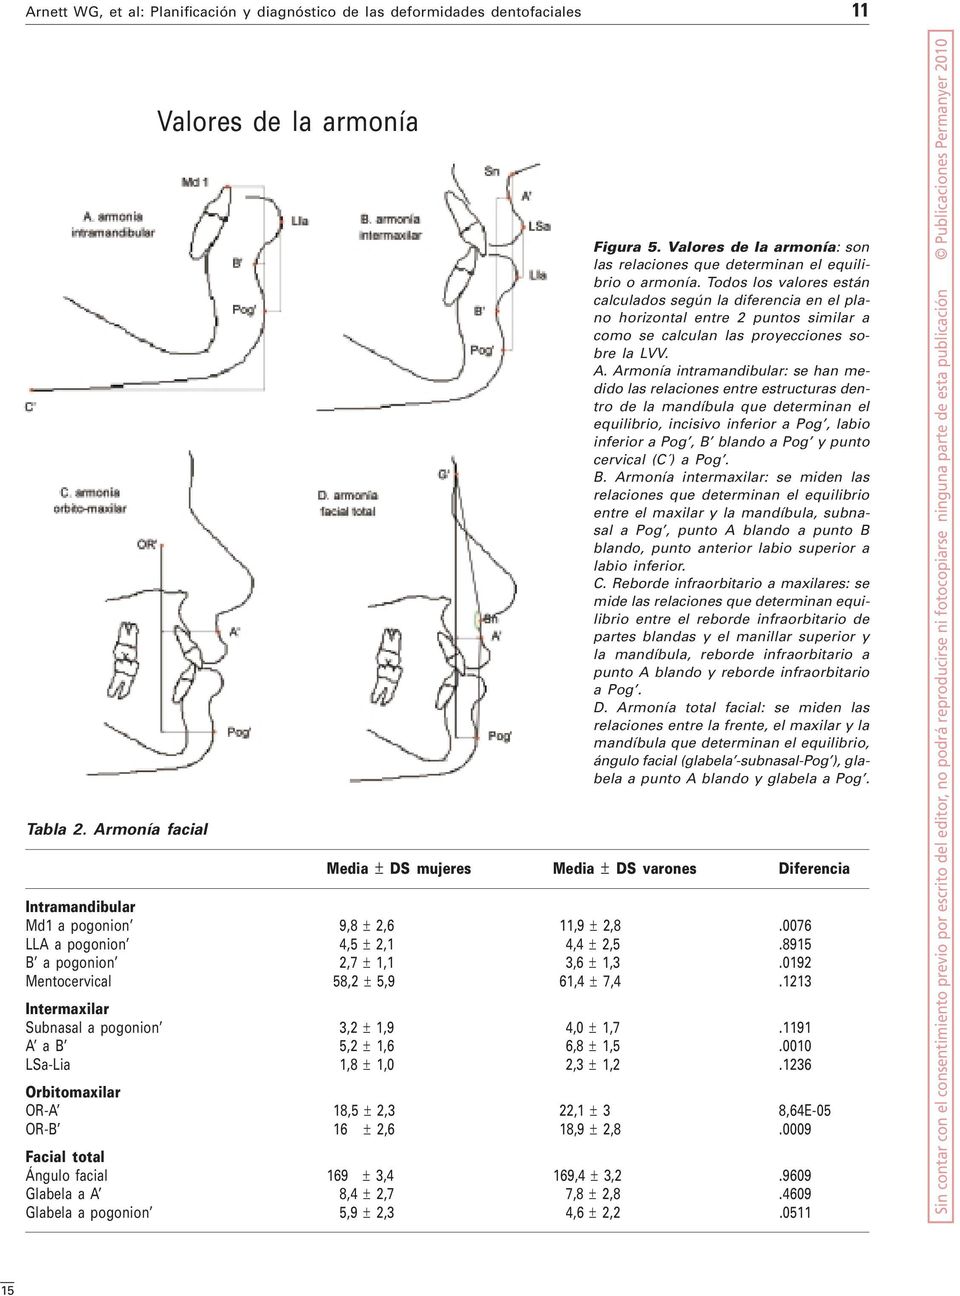 Armonía intramandibular: se han medido las relaciones entre estructuras dentro de la mandíbula que determinan el equilibrio, incisivo inferior a Pog, labio inferior a Pog, B blando a Pog y punto